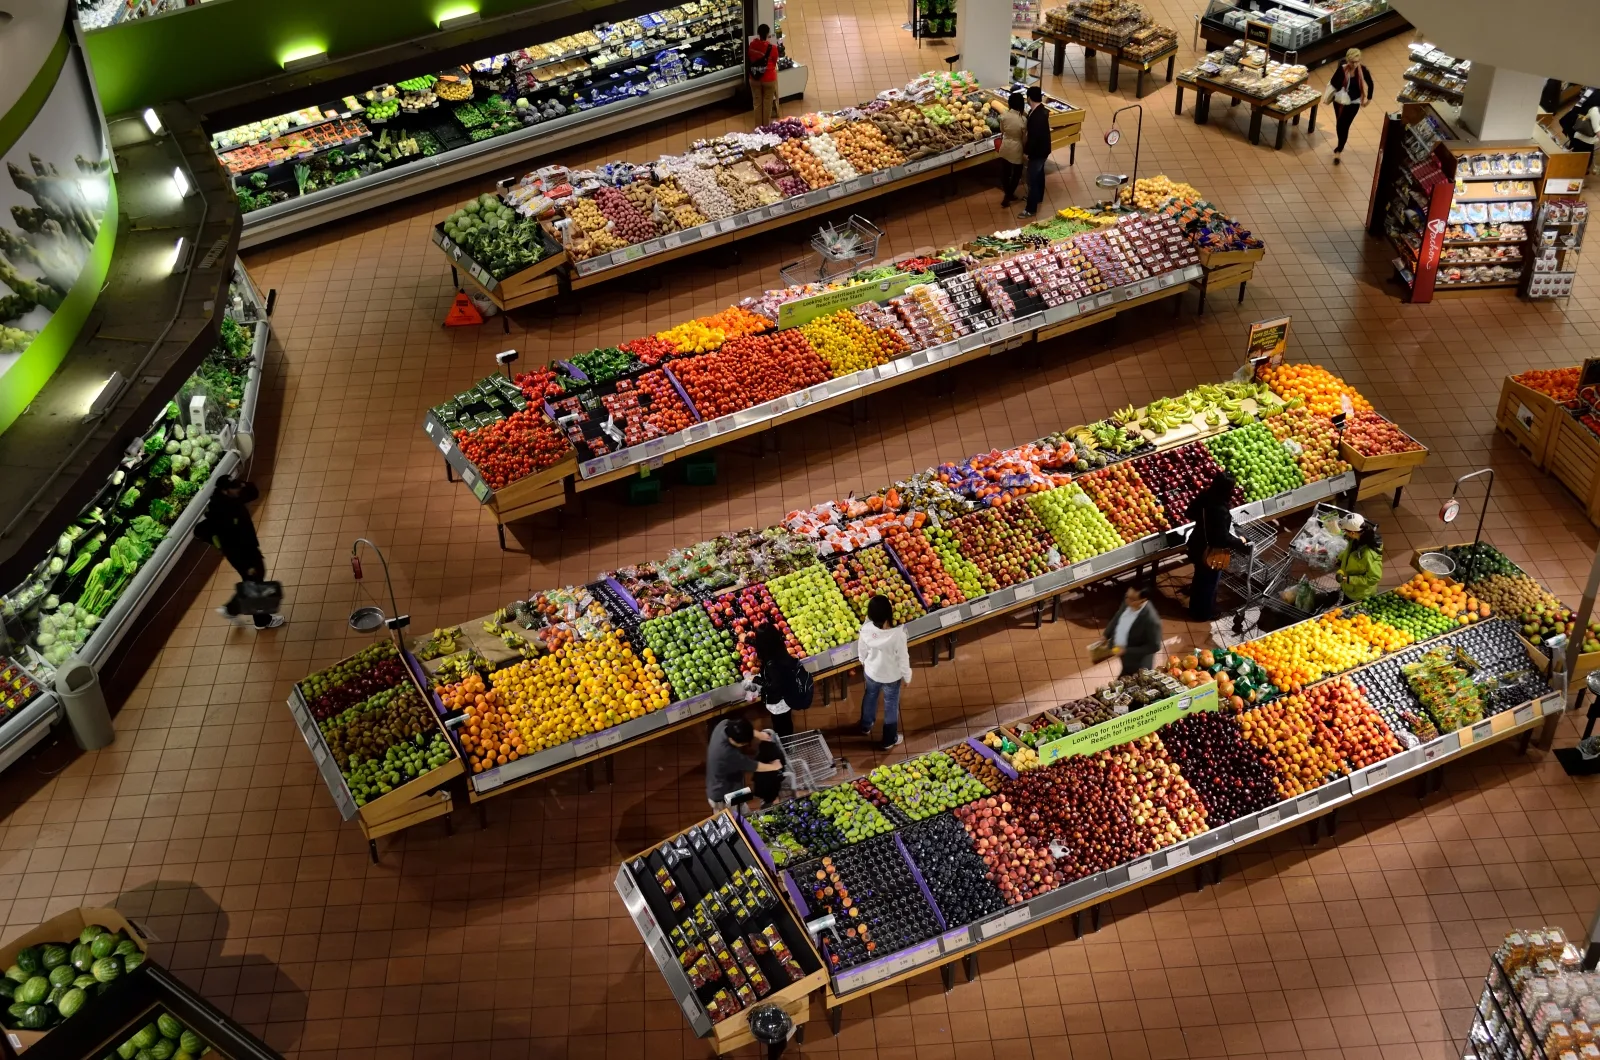 سوق ممتاز تعرض فيه أنواع عديدة من الخضر والفواكه